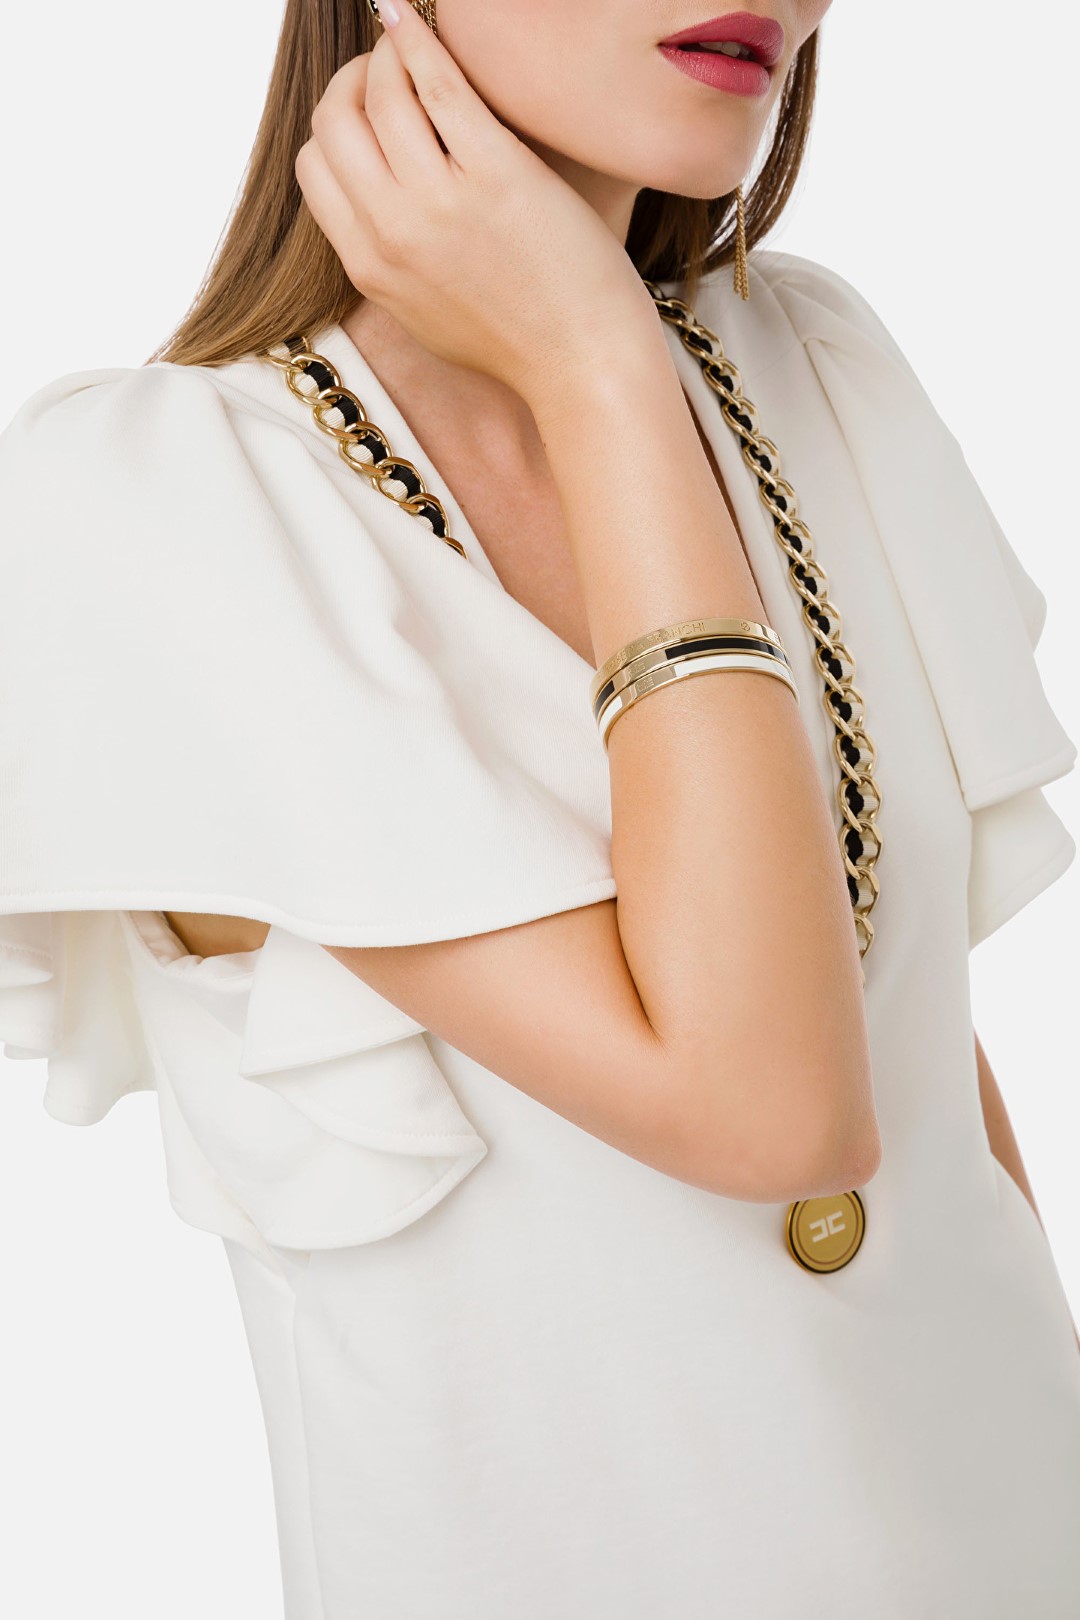 Elisabetta Franchi Set of bracelets - altamoda Blog - altamoda.shop